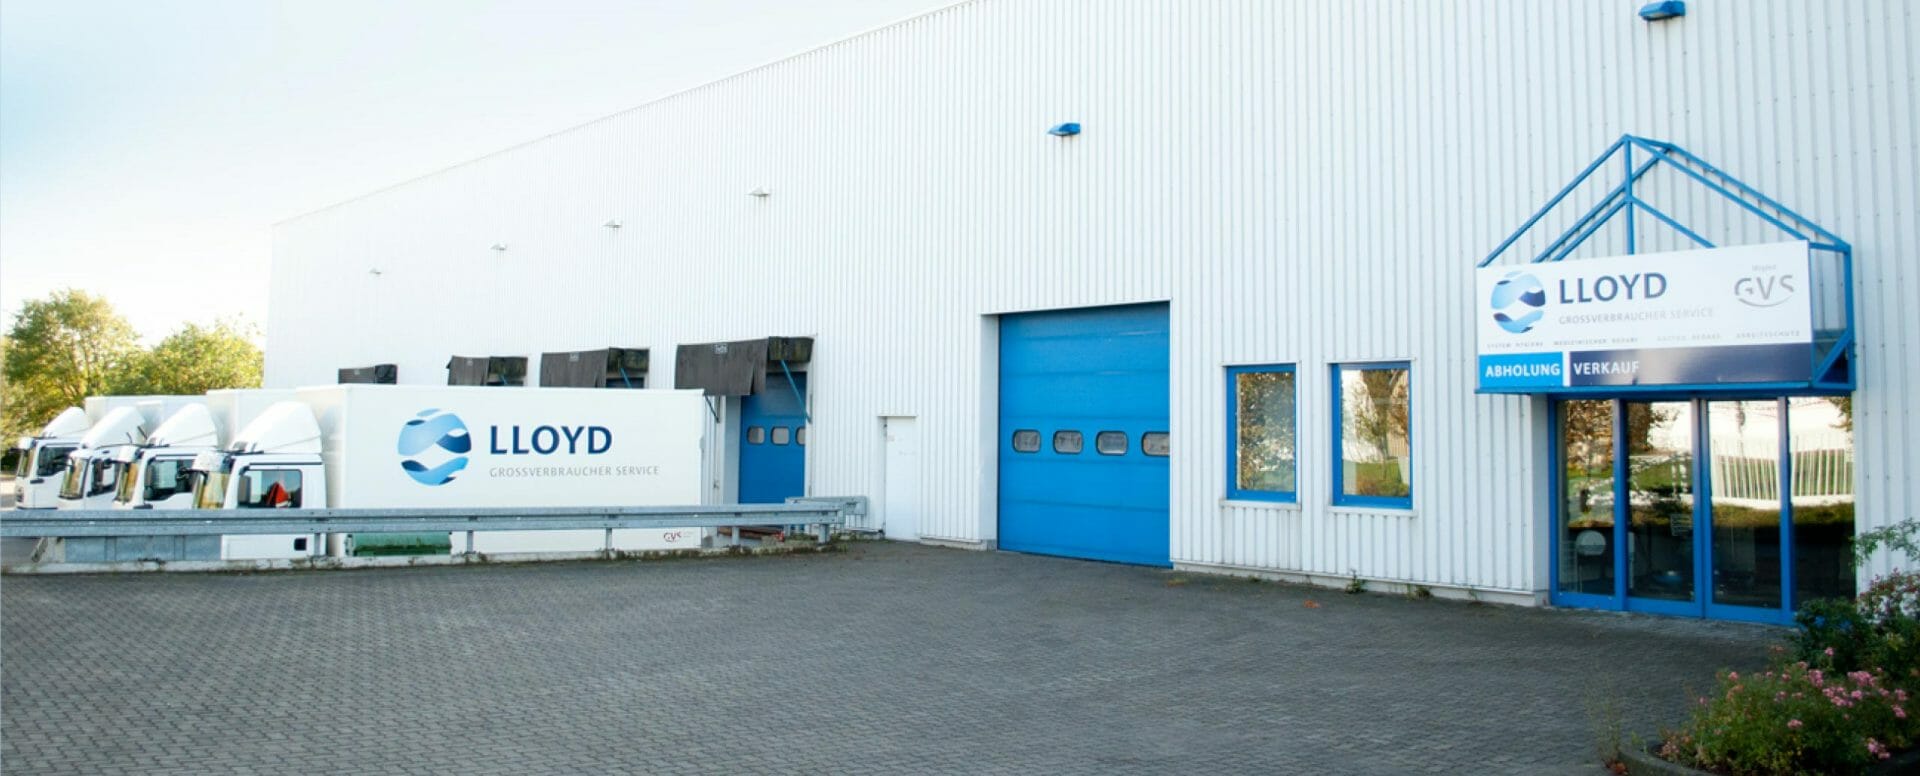 Filialbetrieb der LLOYD Großverbraucherservice GmbH & Co. KG in Rostock